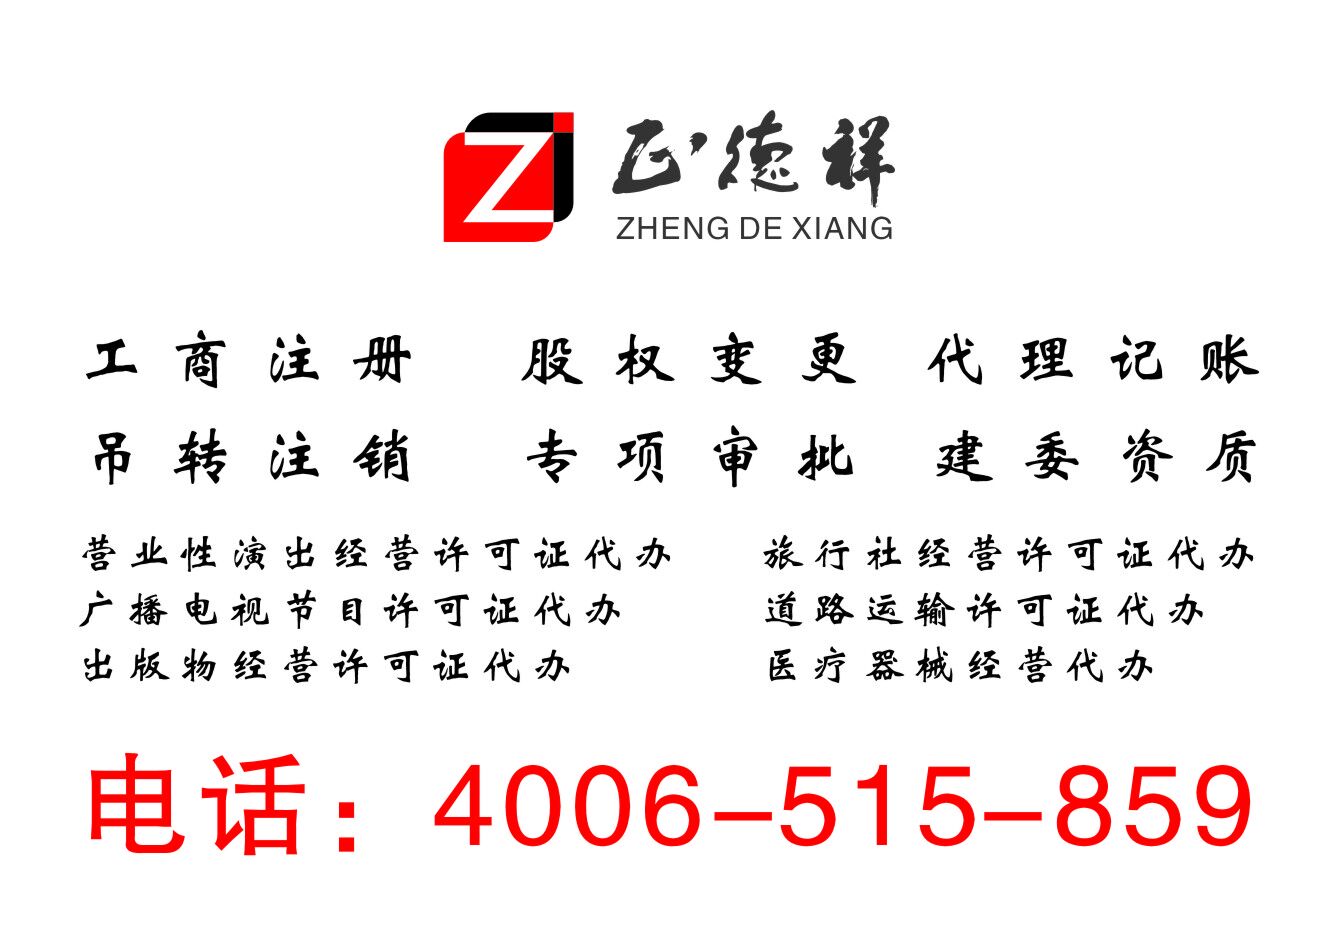 注册北京丰台900万文化传媒公司，注册北京丰台900万影视文化传媒公司